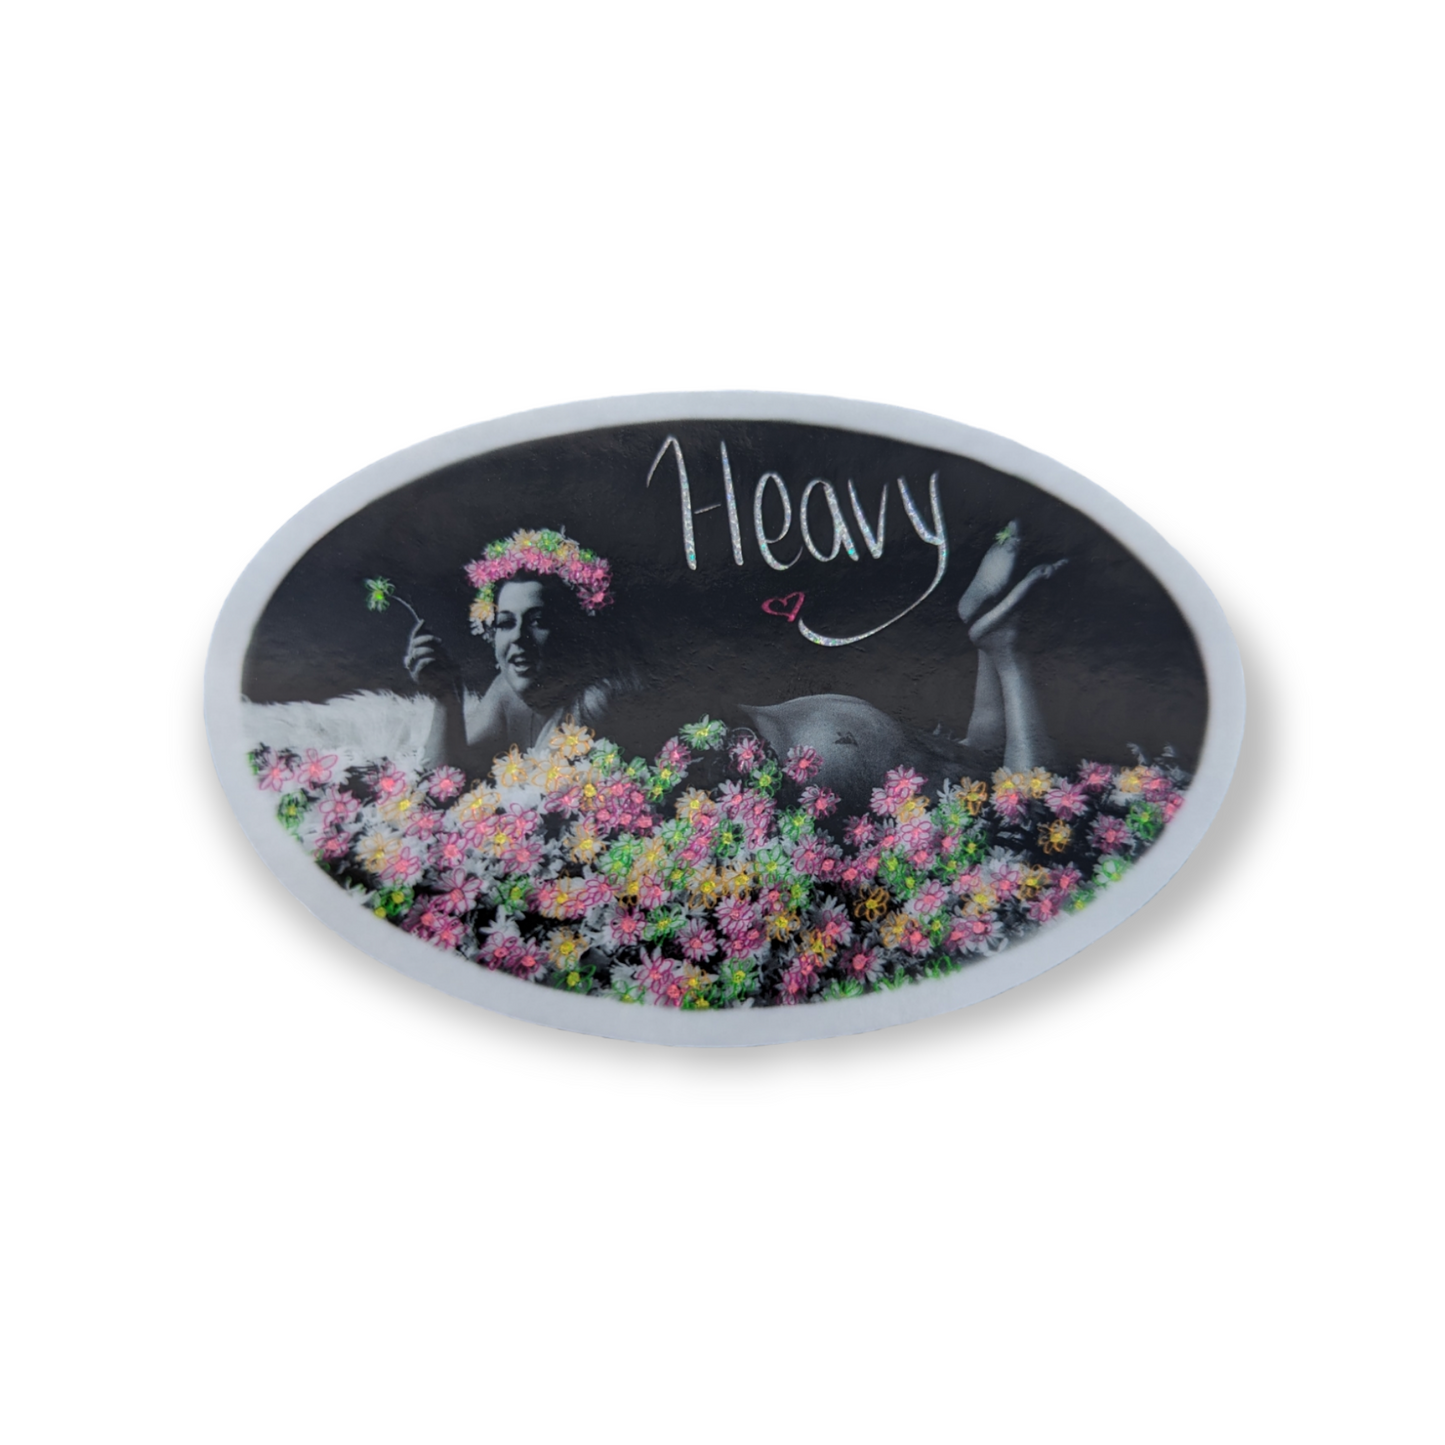 Glitter "Heavy" Sticker by Alyssa Kaliszewski